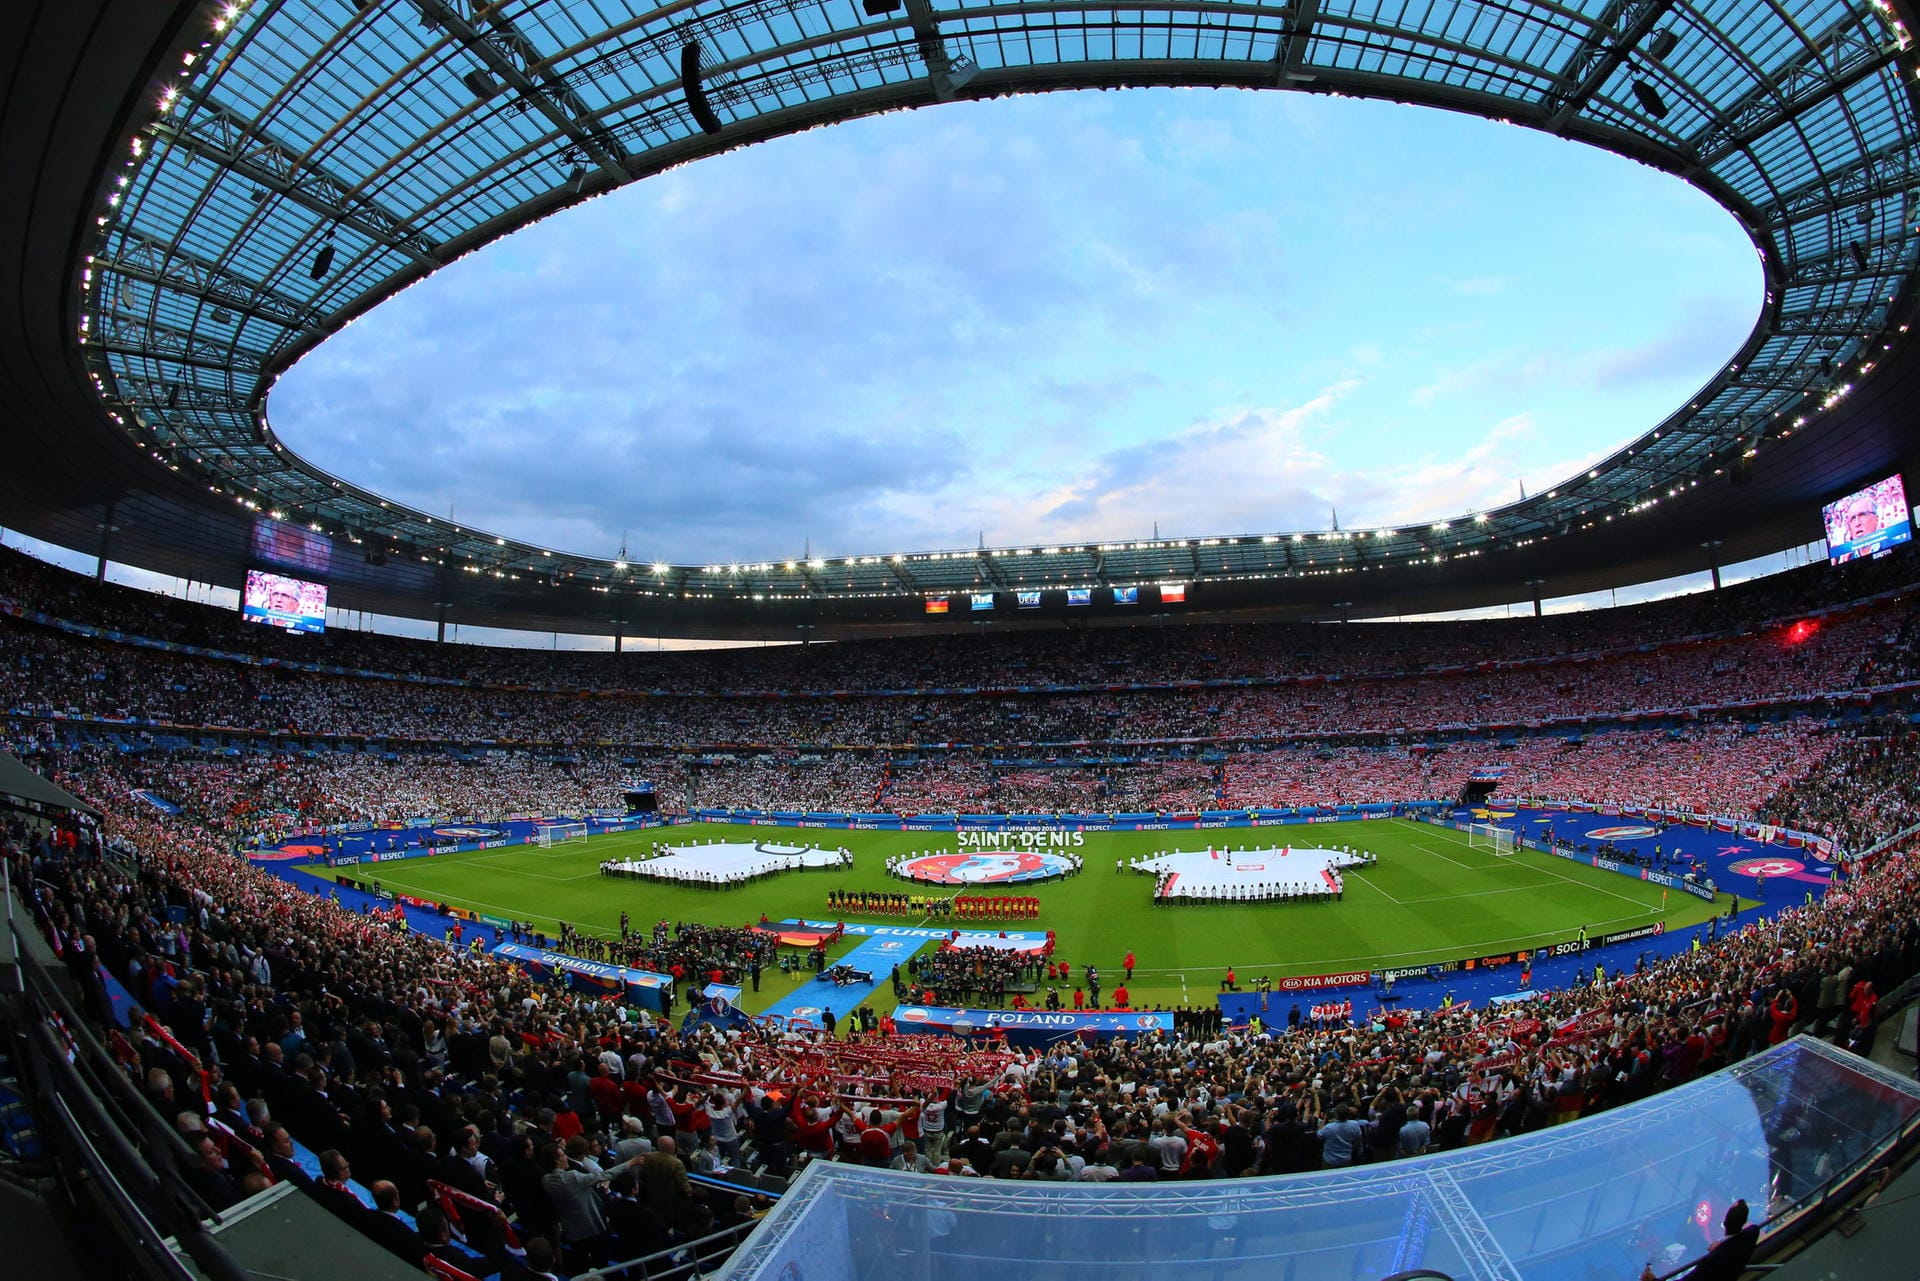 Vorhang auf für das Kräftemessen zwischen Deutschland und Polen. Im Stade de France im Pariser Vorort Saint-Denis will die DFB-Auswahl nach dem Auftakterfolg gegen die Ukraine (2:0) vor 80.000 Zuschauern den zweiten Sieg in der EM-Endrunde folgen lassen.